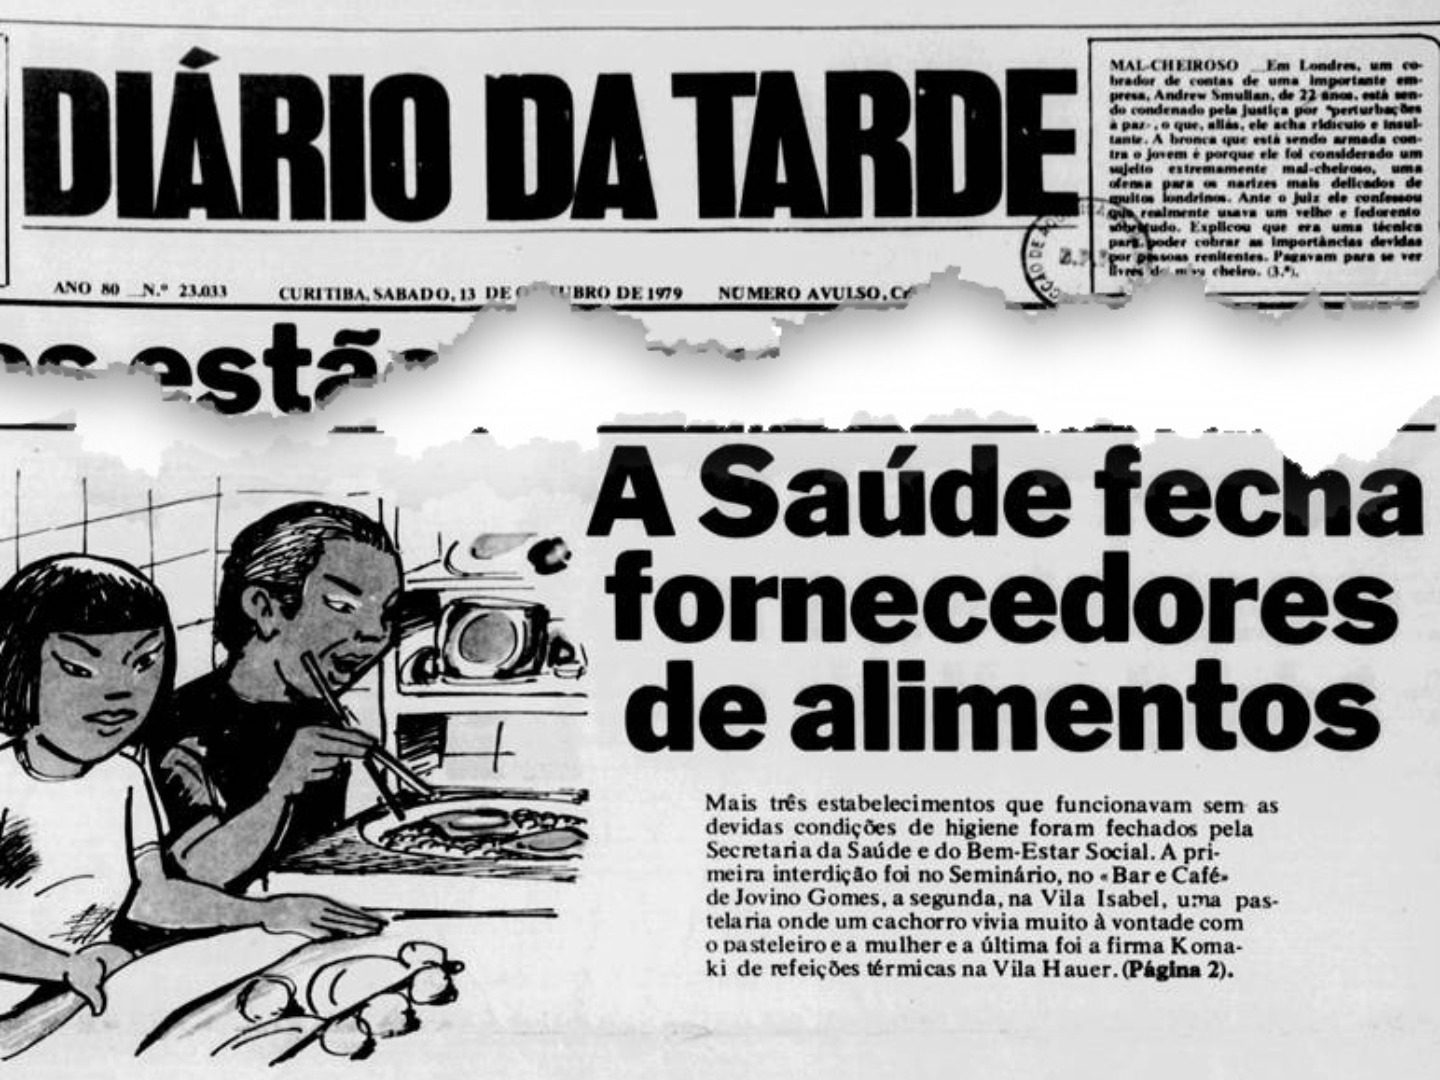 Reprodução de notícia publicada no jornal Diário da Tarde, de Curitiba, em 1979